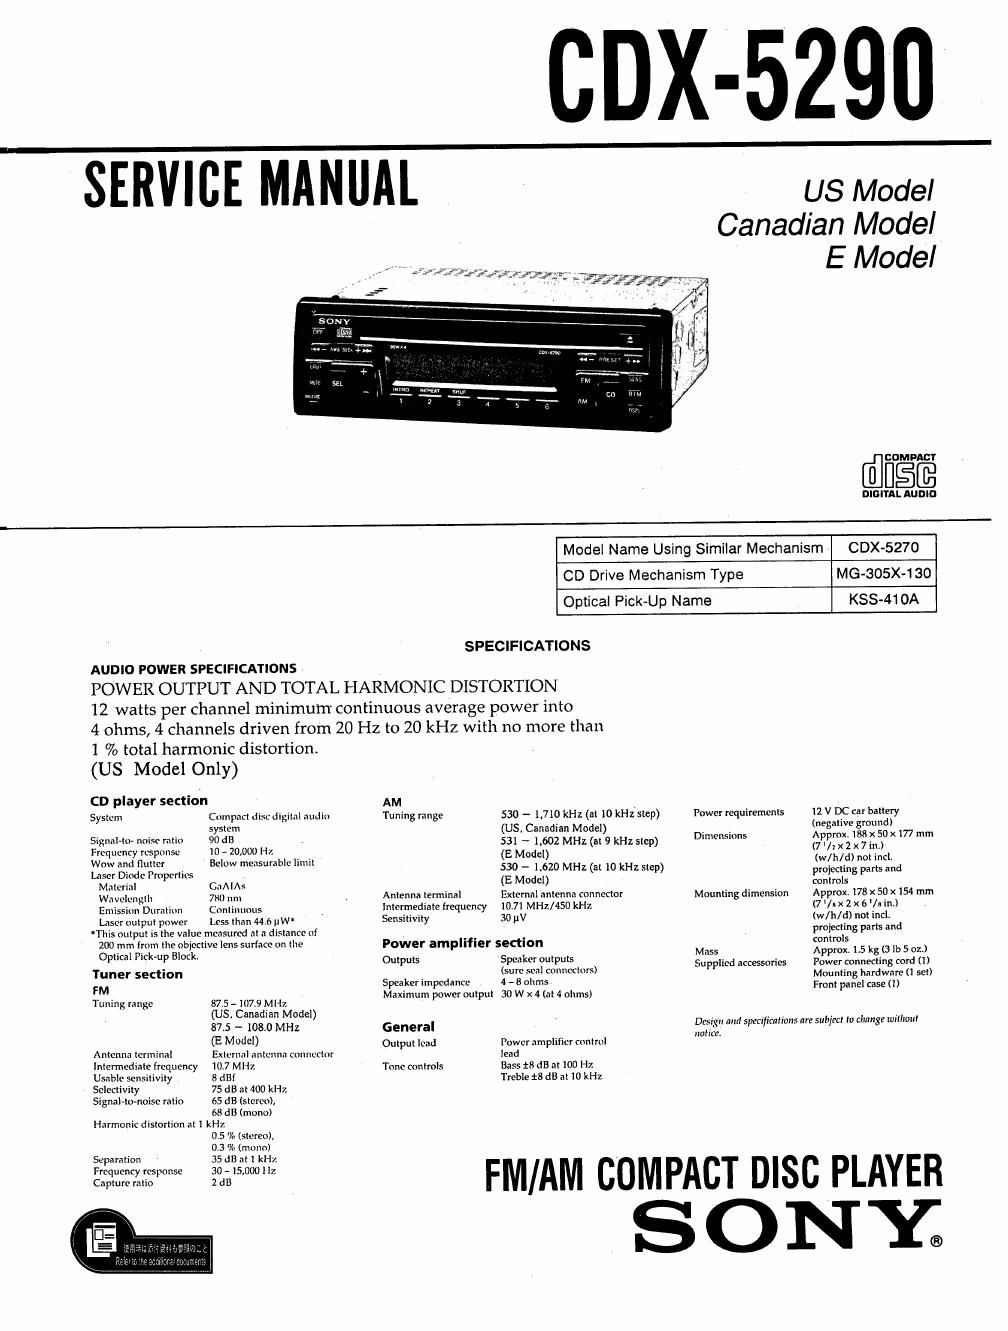 sony cdx 5290 service manual